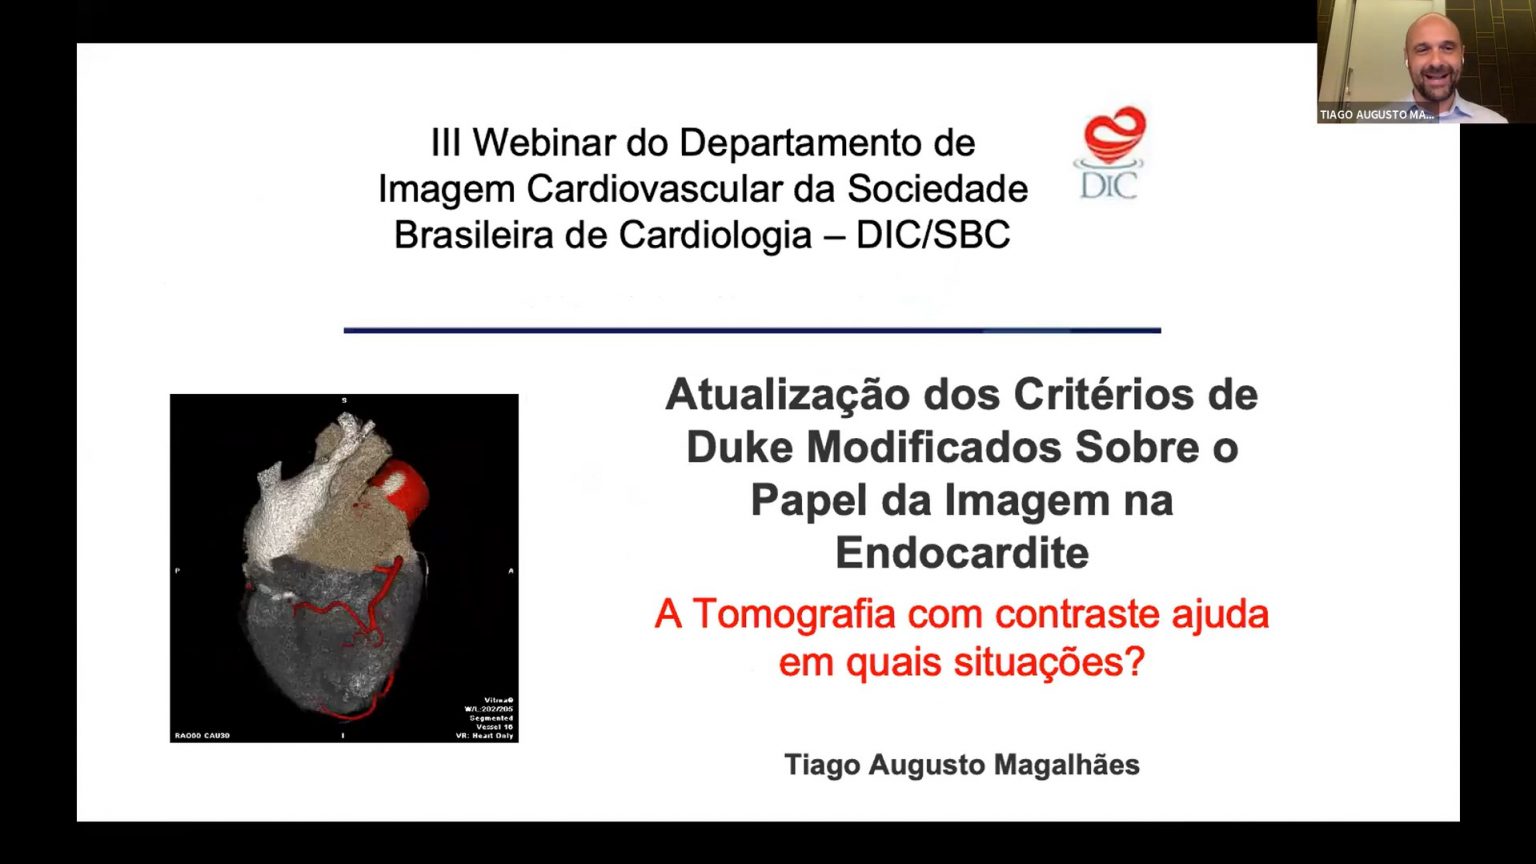 A Tomografia Com Contraste Ajuda Em Quais Situações - Tiago Augusto Magalhaes